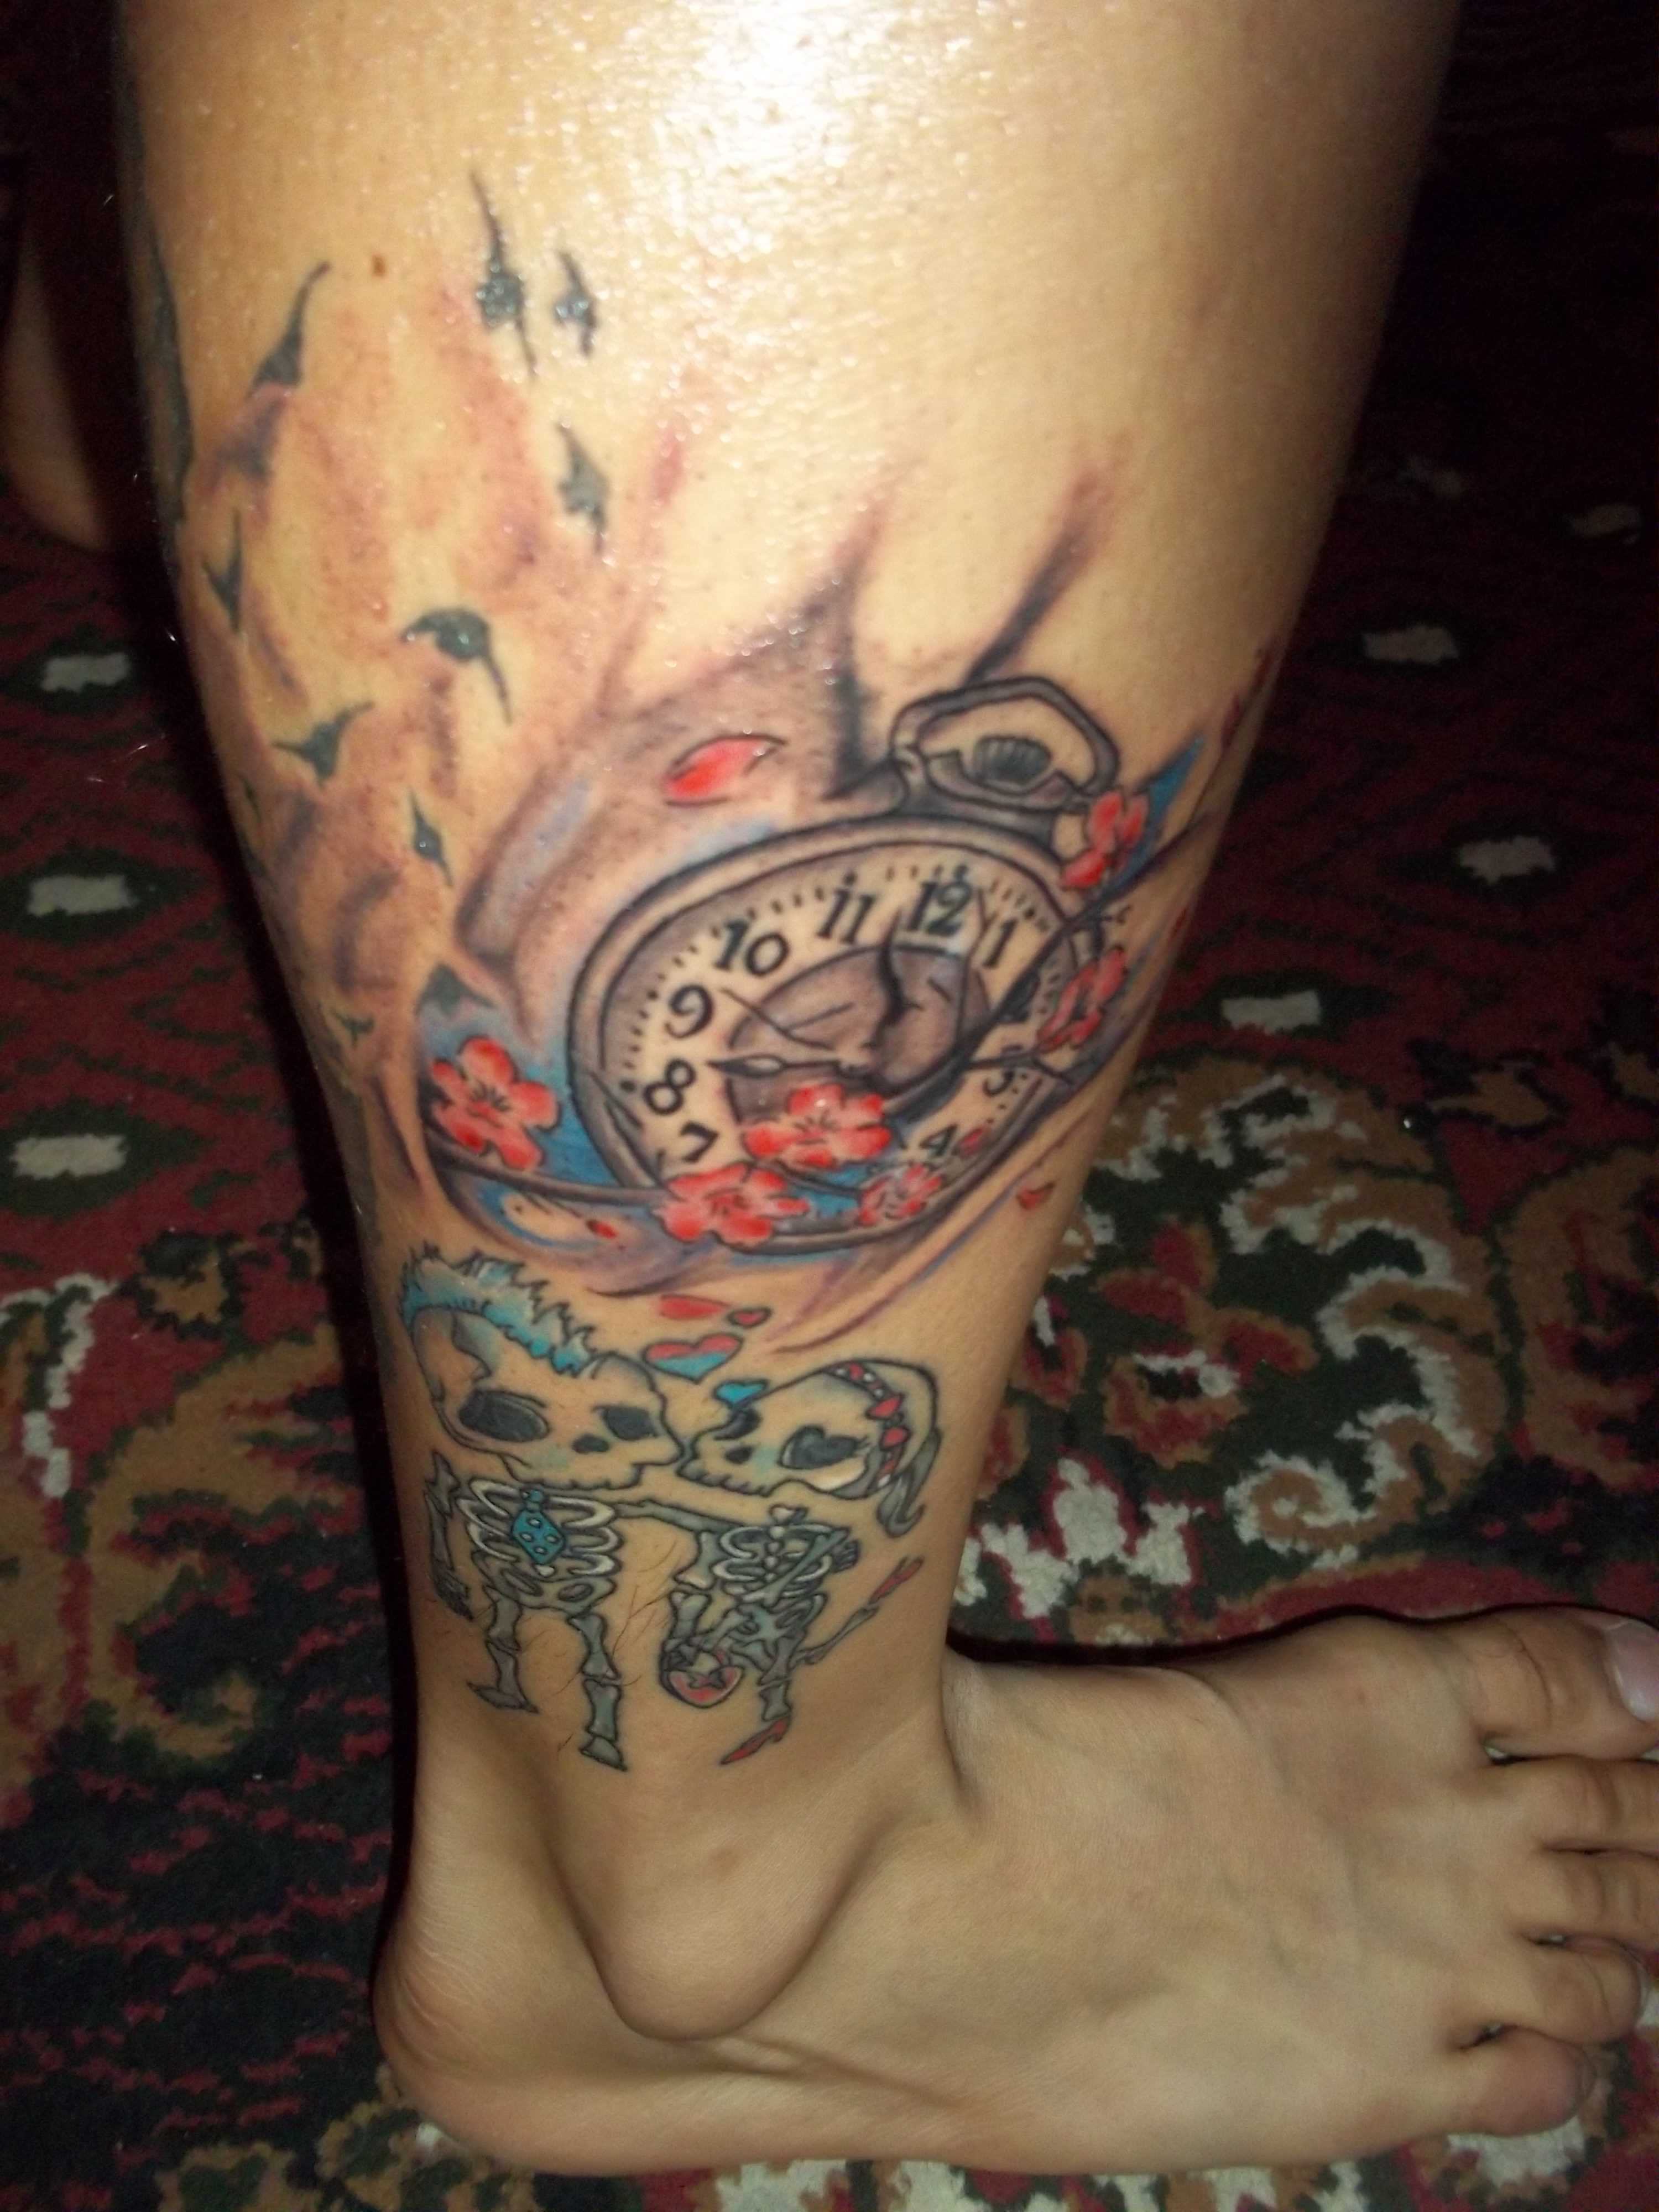 Tatuagem na perna da menina - relógio de bolso e esqueletos